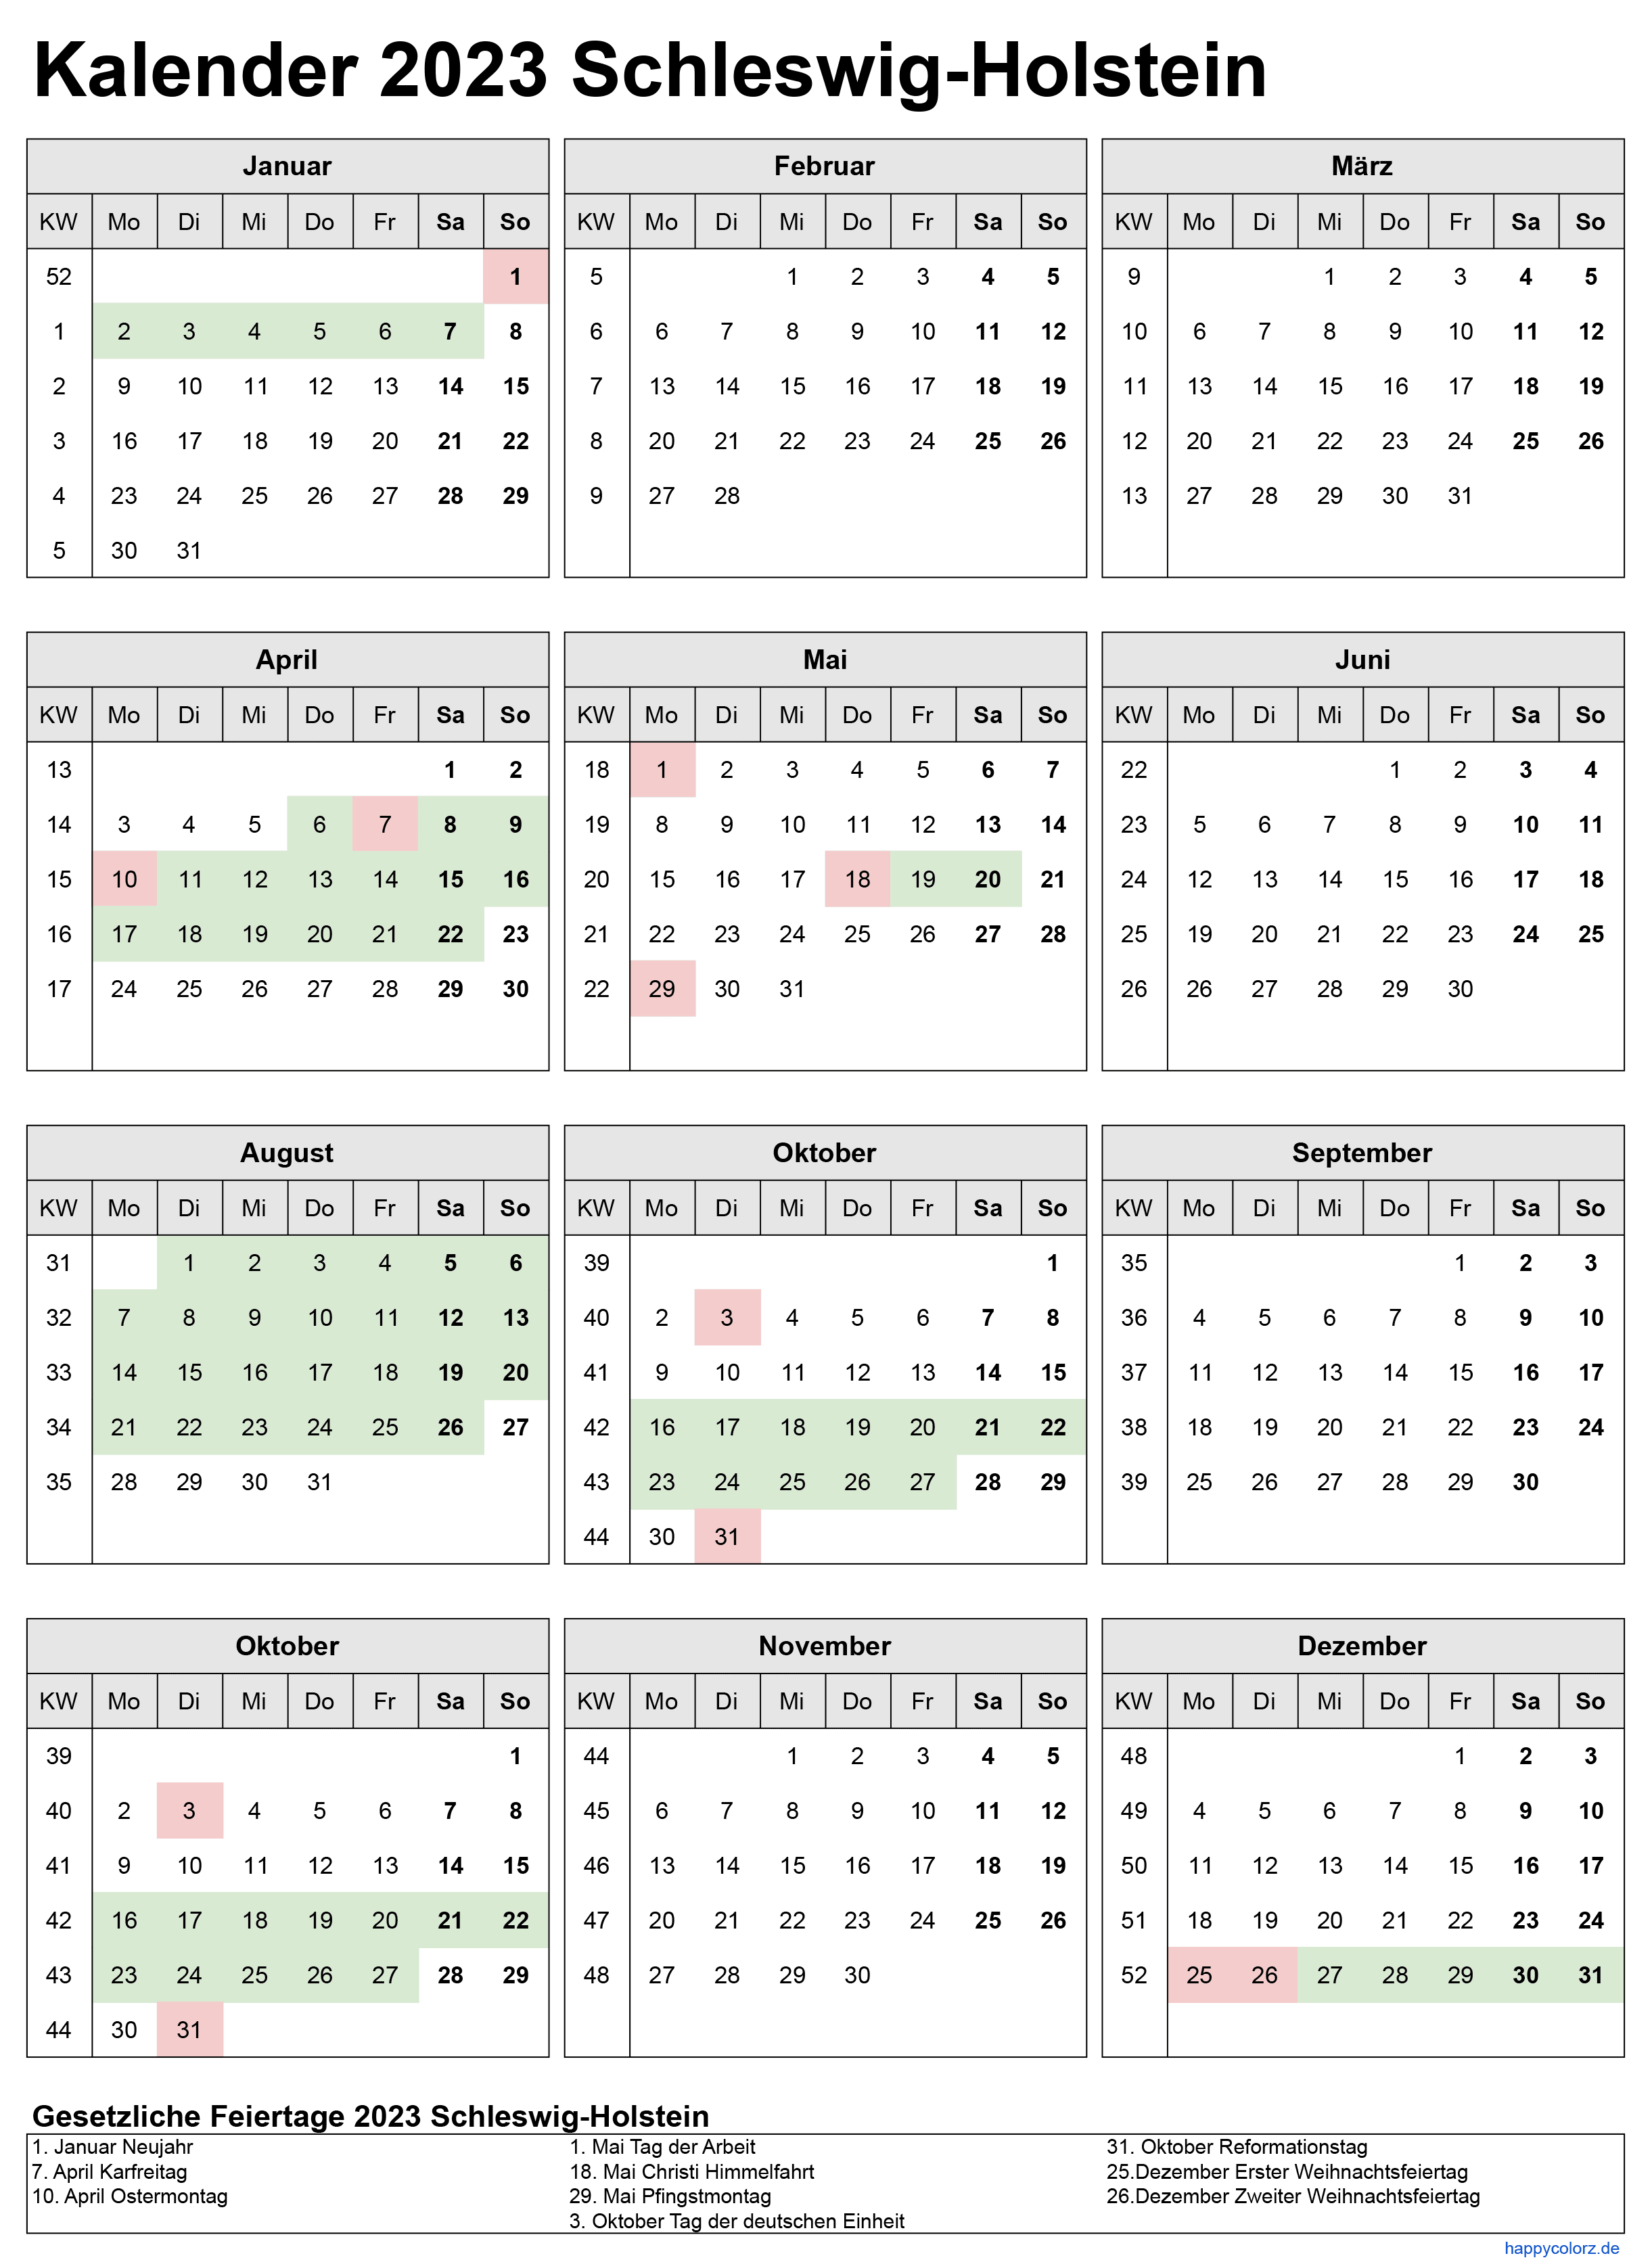 Kalender 2023 Schleswig-Holstein zum Ausdrucken